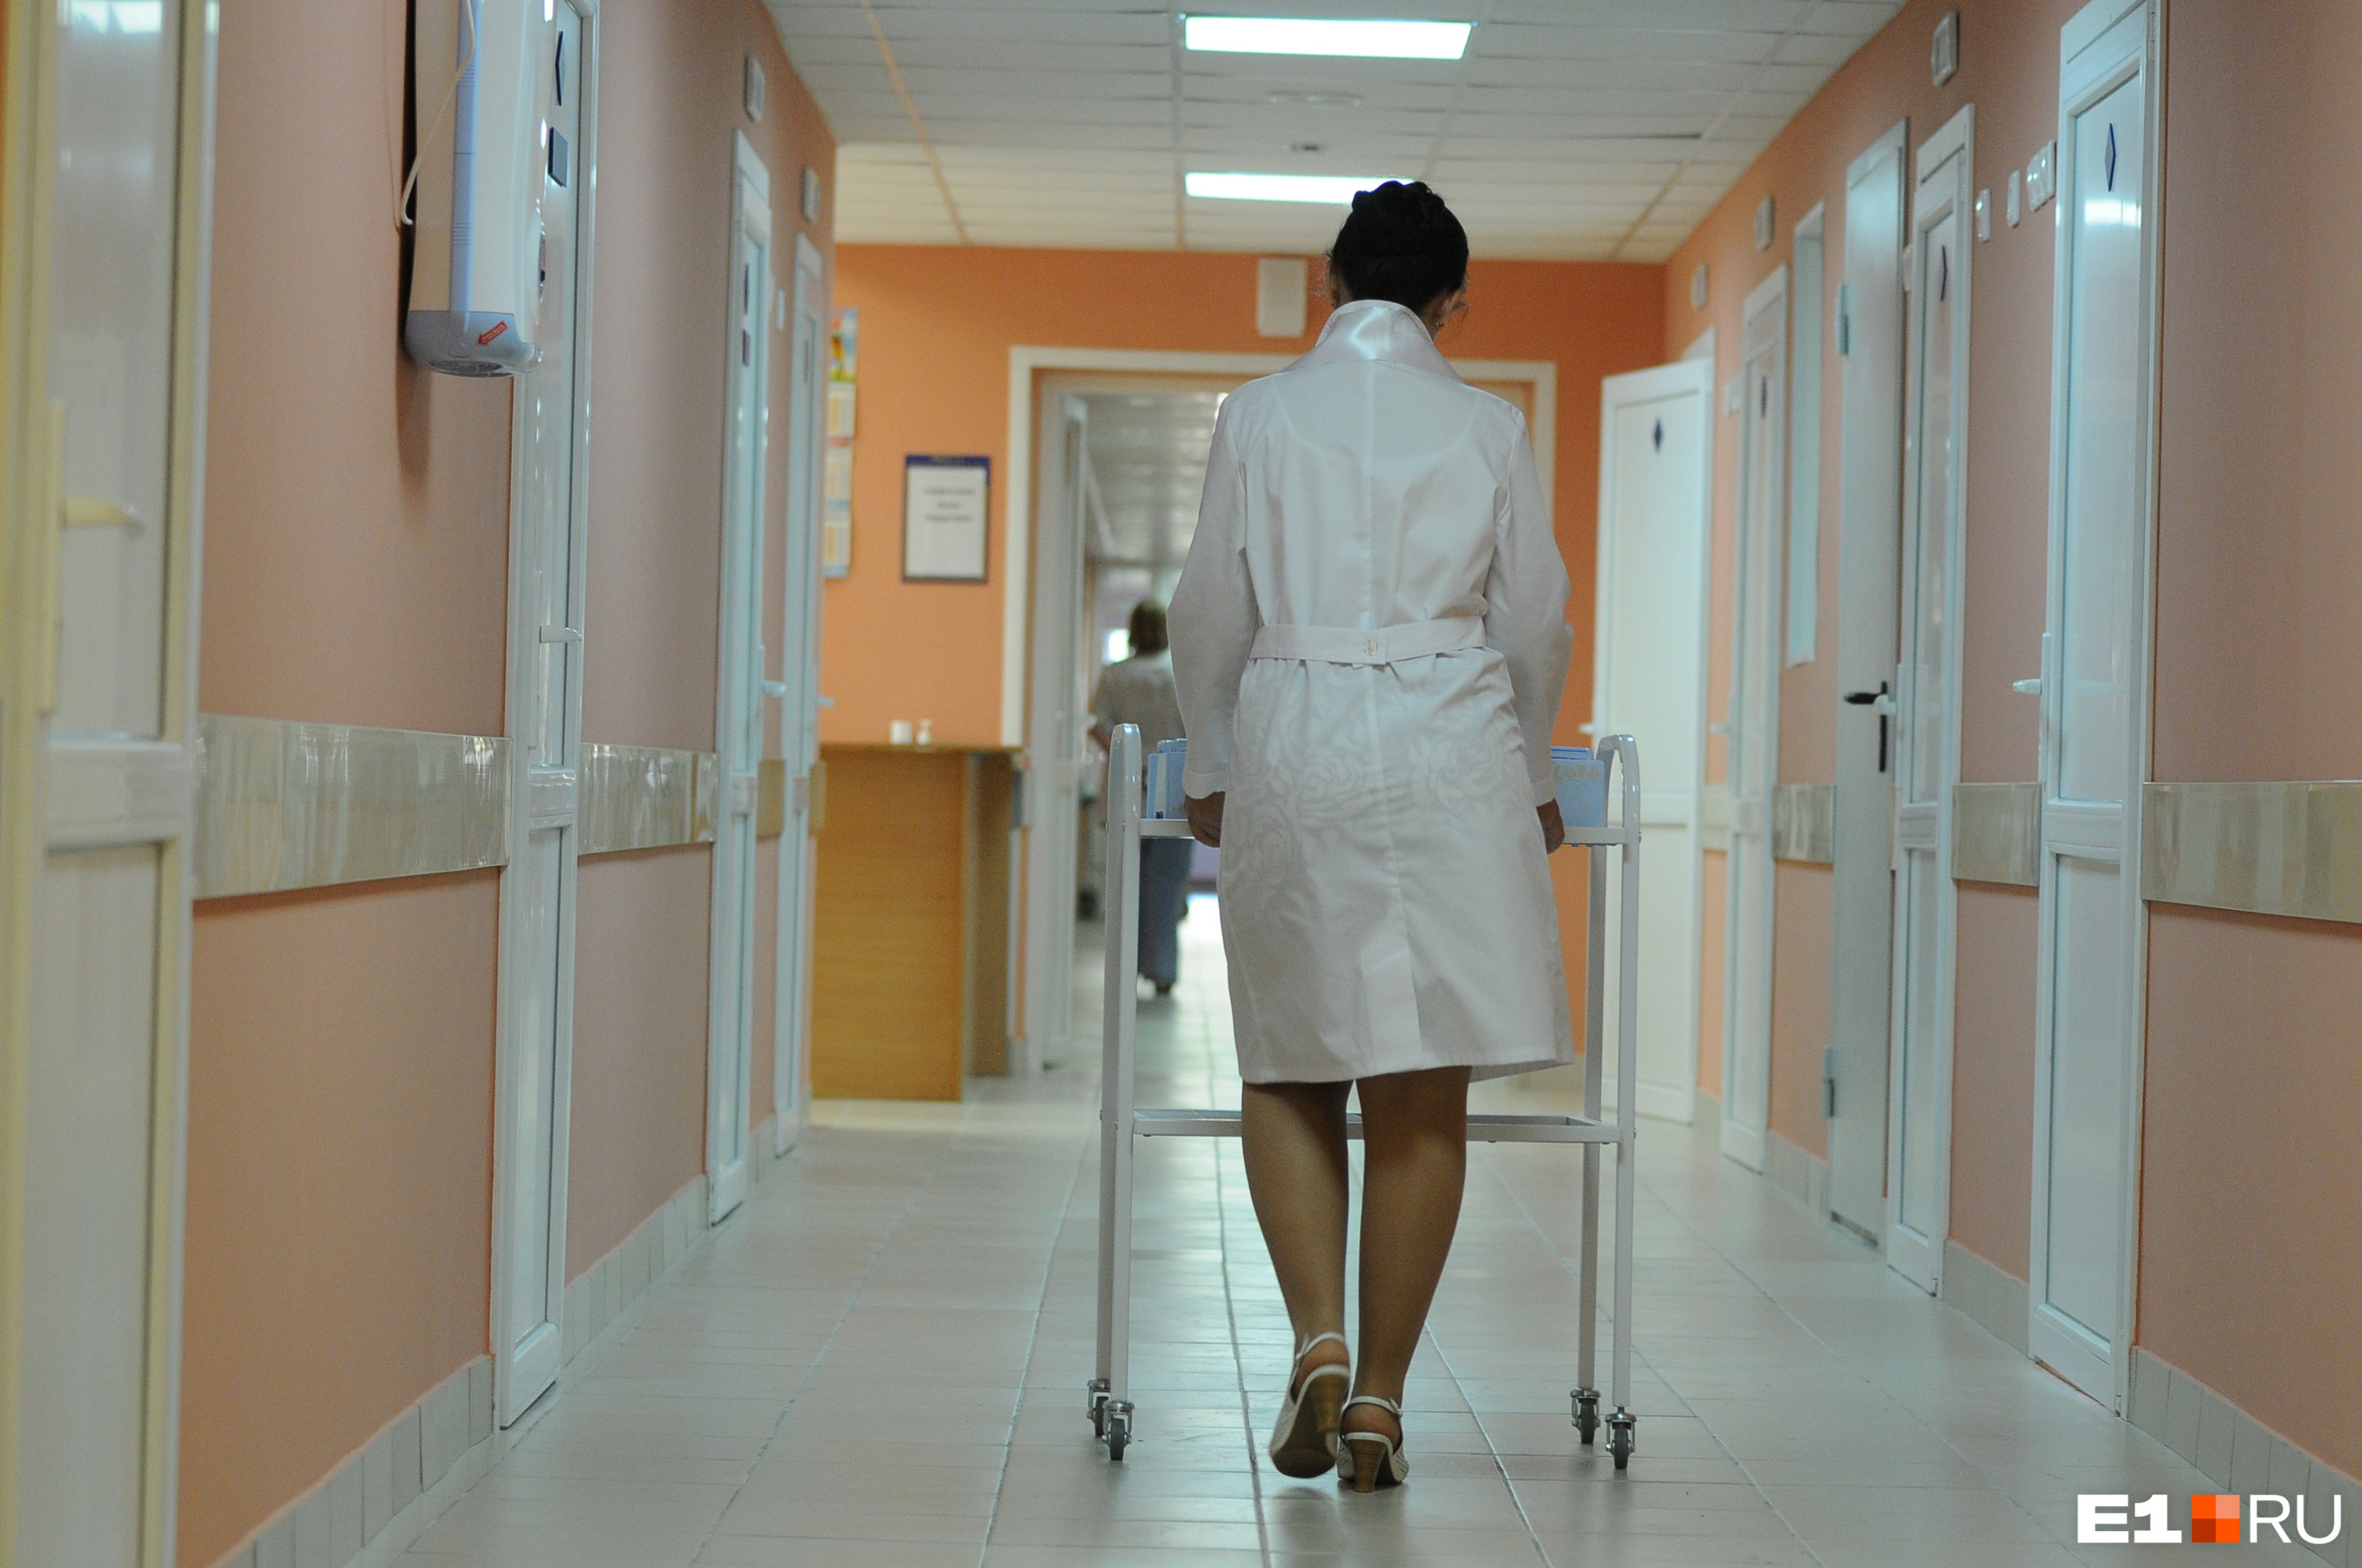 О препаратах, которые Баскаков передал для пациентки, оперативникам сообщила медсестра